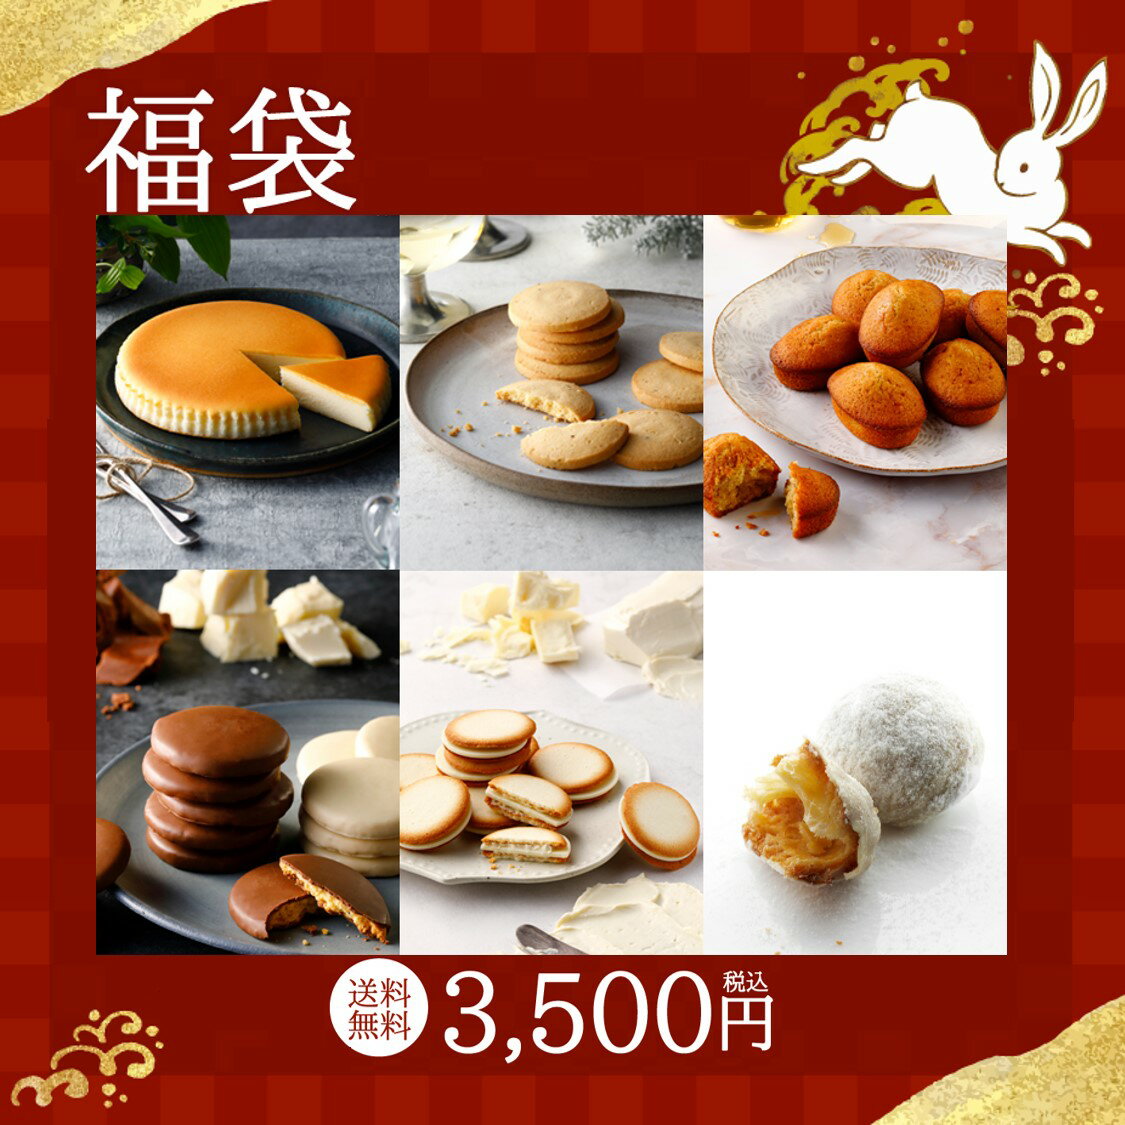 1月お届け便 【チーズガーデン福袋B 2023】 チーズケーキ クッキー 焼菓子などスイーツ6種類詰め合わせ 